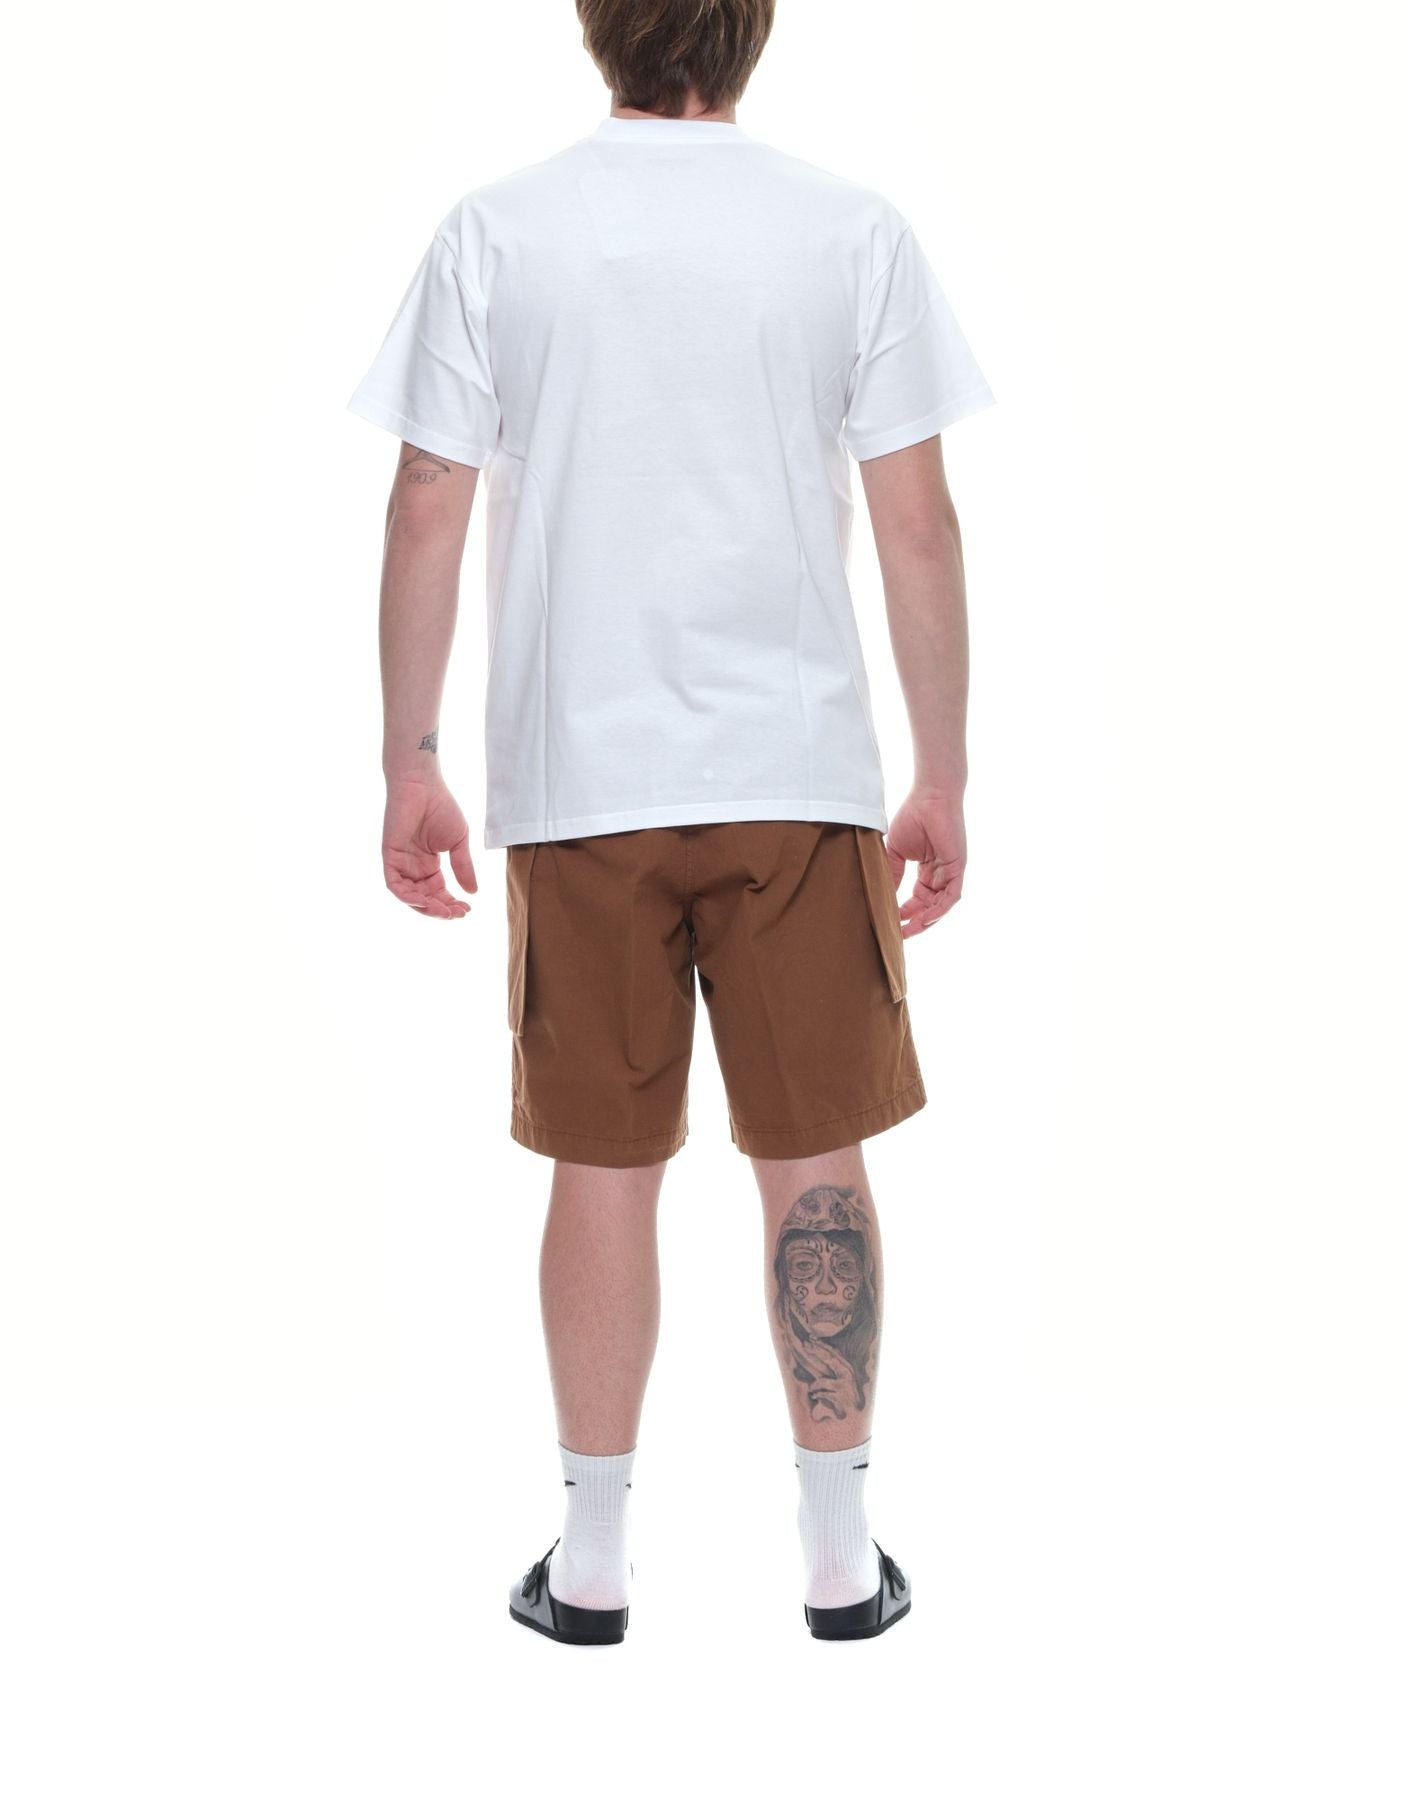 Camiseta para el hombre i033160 Camiseta de goteo blanco CARHARTT WIP